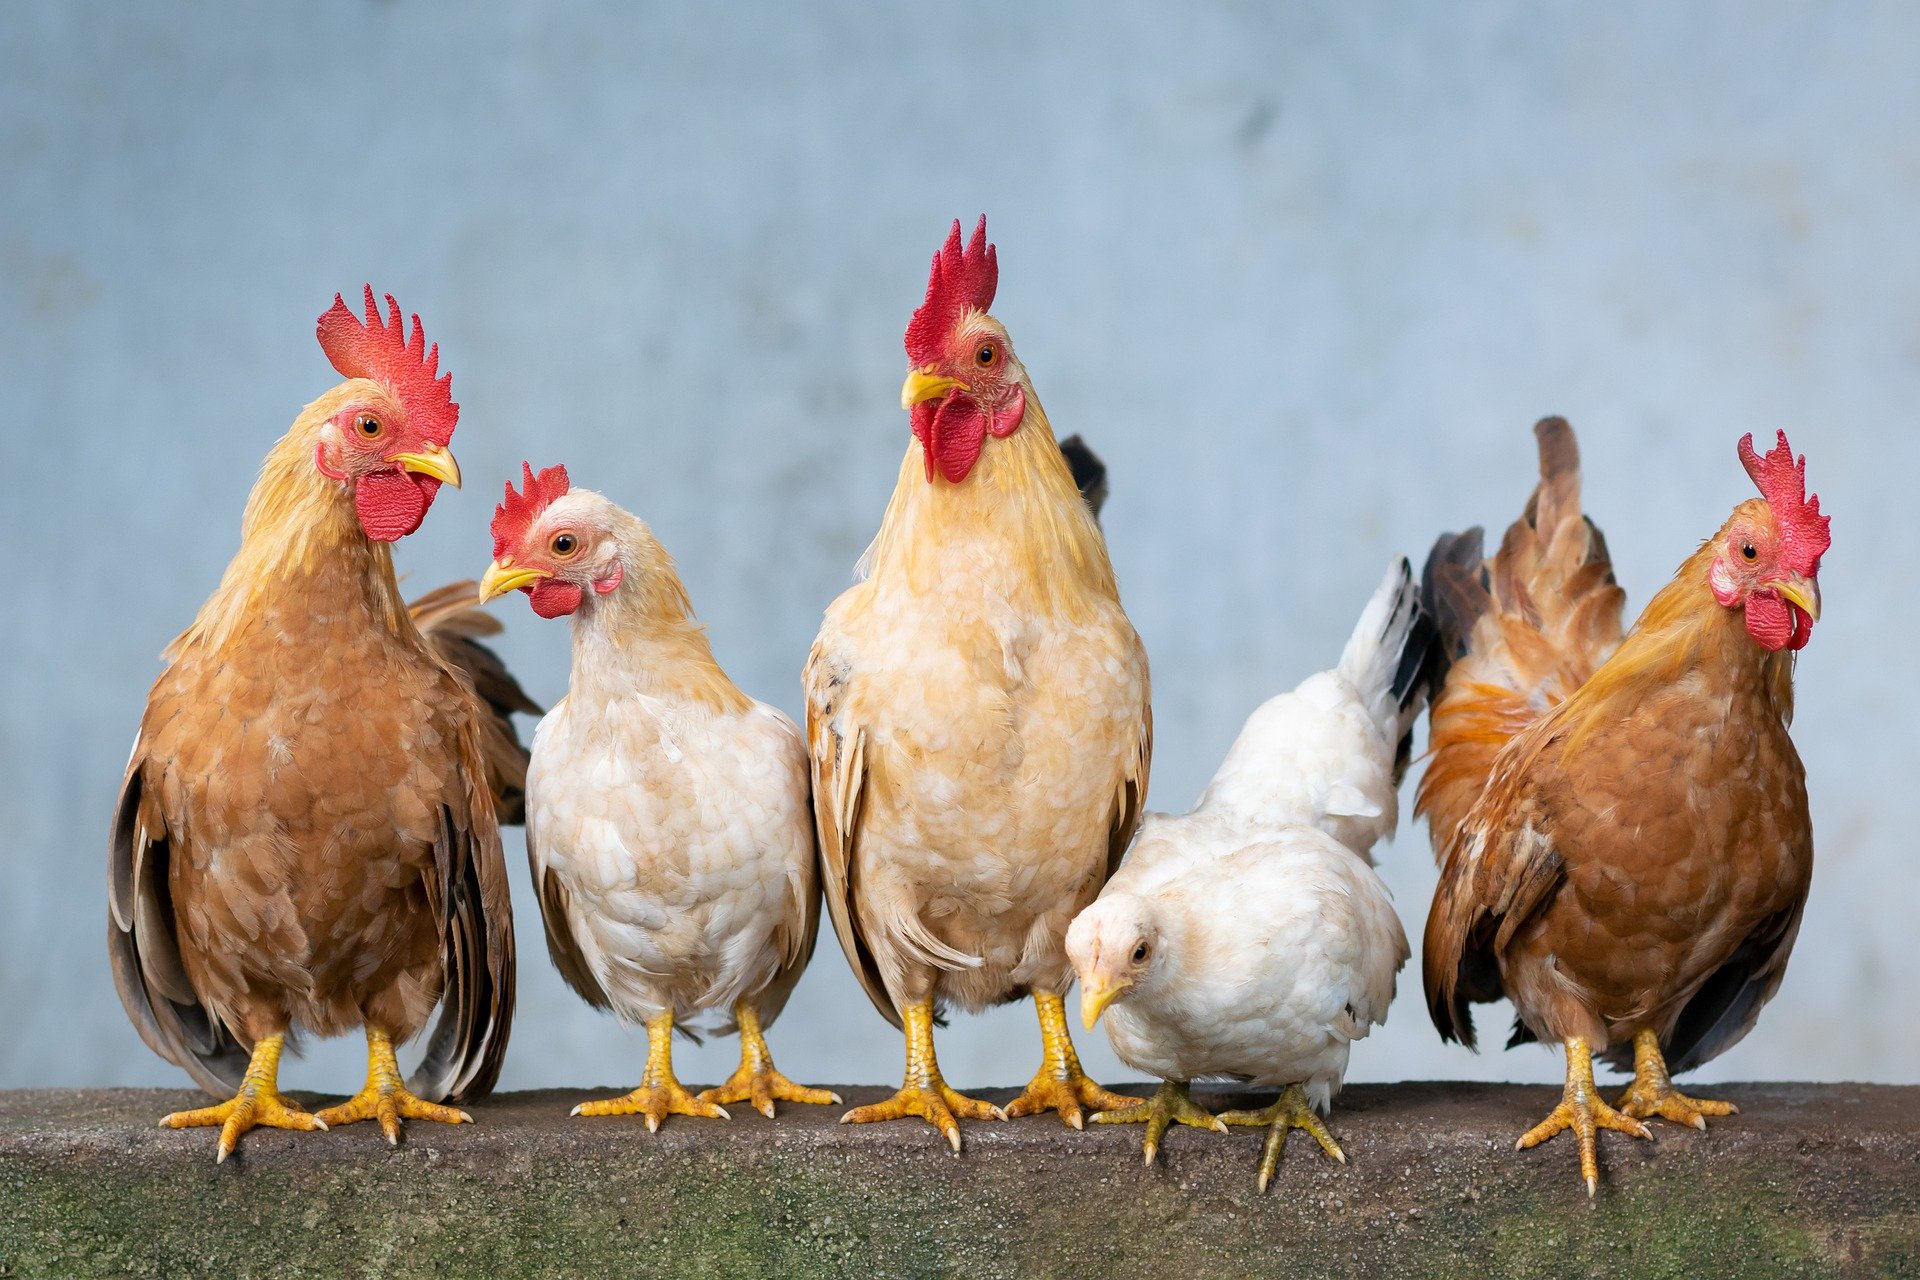 ΥΠΑΑΤ: Αποσύρθηκαν 34,5 τόνοι κοτόπουλων και δεκάδες χιλιάδες αυγών που επιχείρηση προωθούσε ως δήθεν βιολογικά